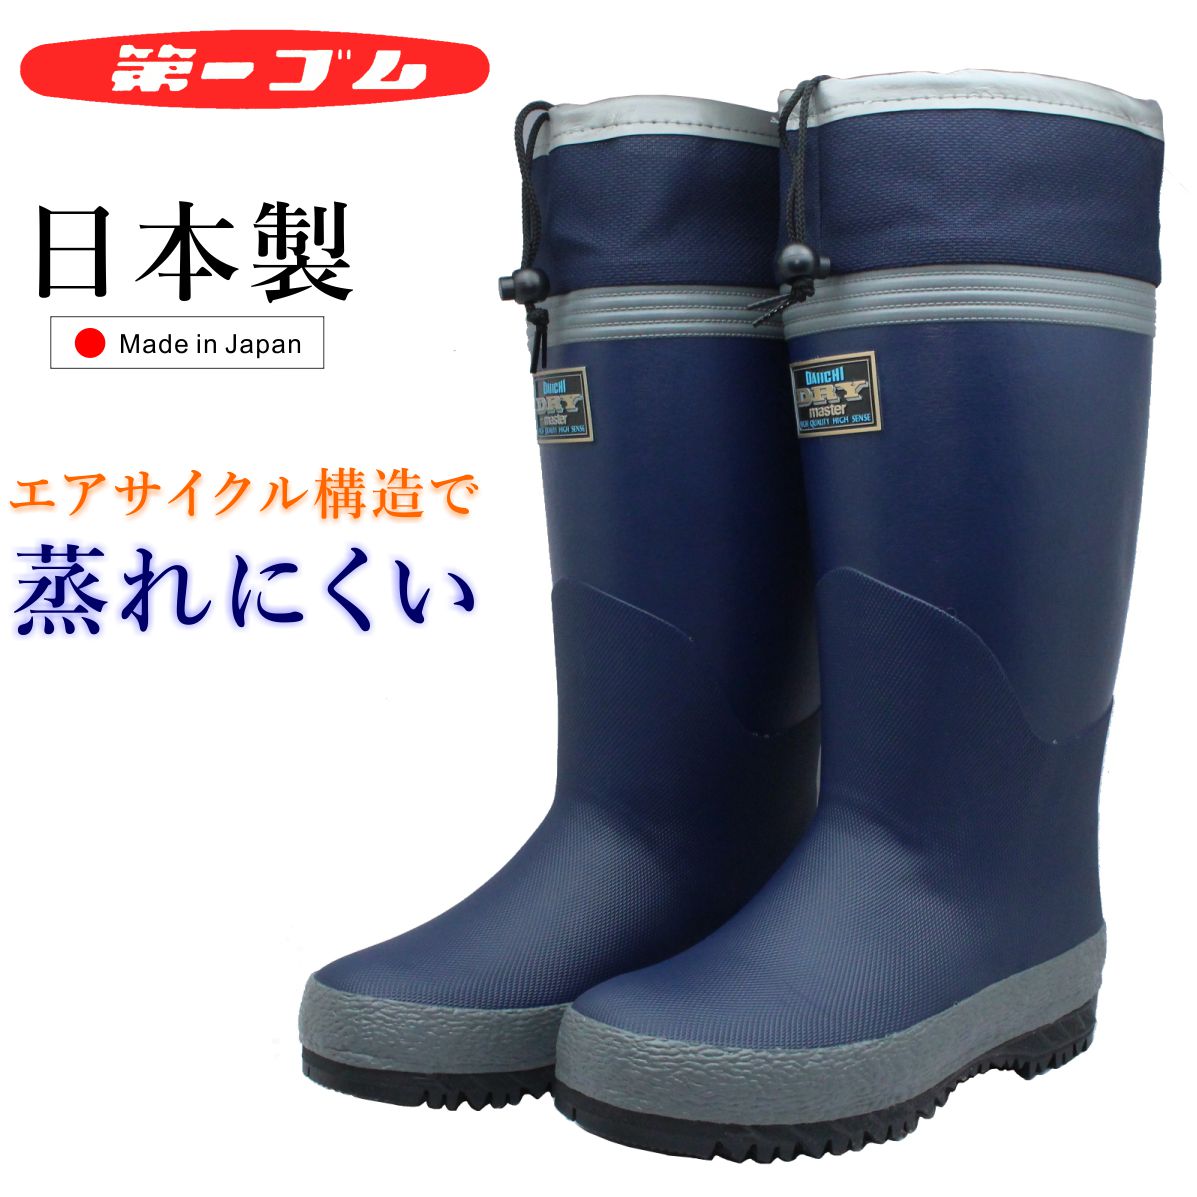 第一ゴム メンズ ドライマスター K75 長靴 ムレ予防 防湿 防滑 完全防水 日本製